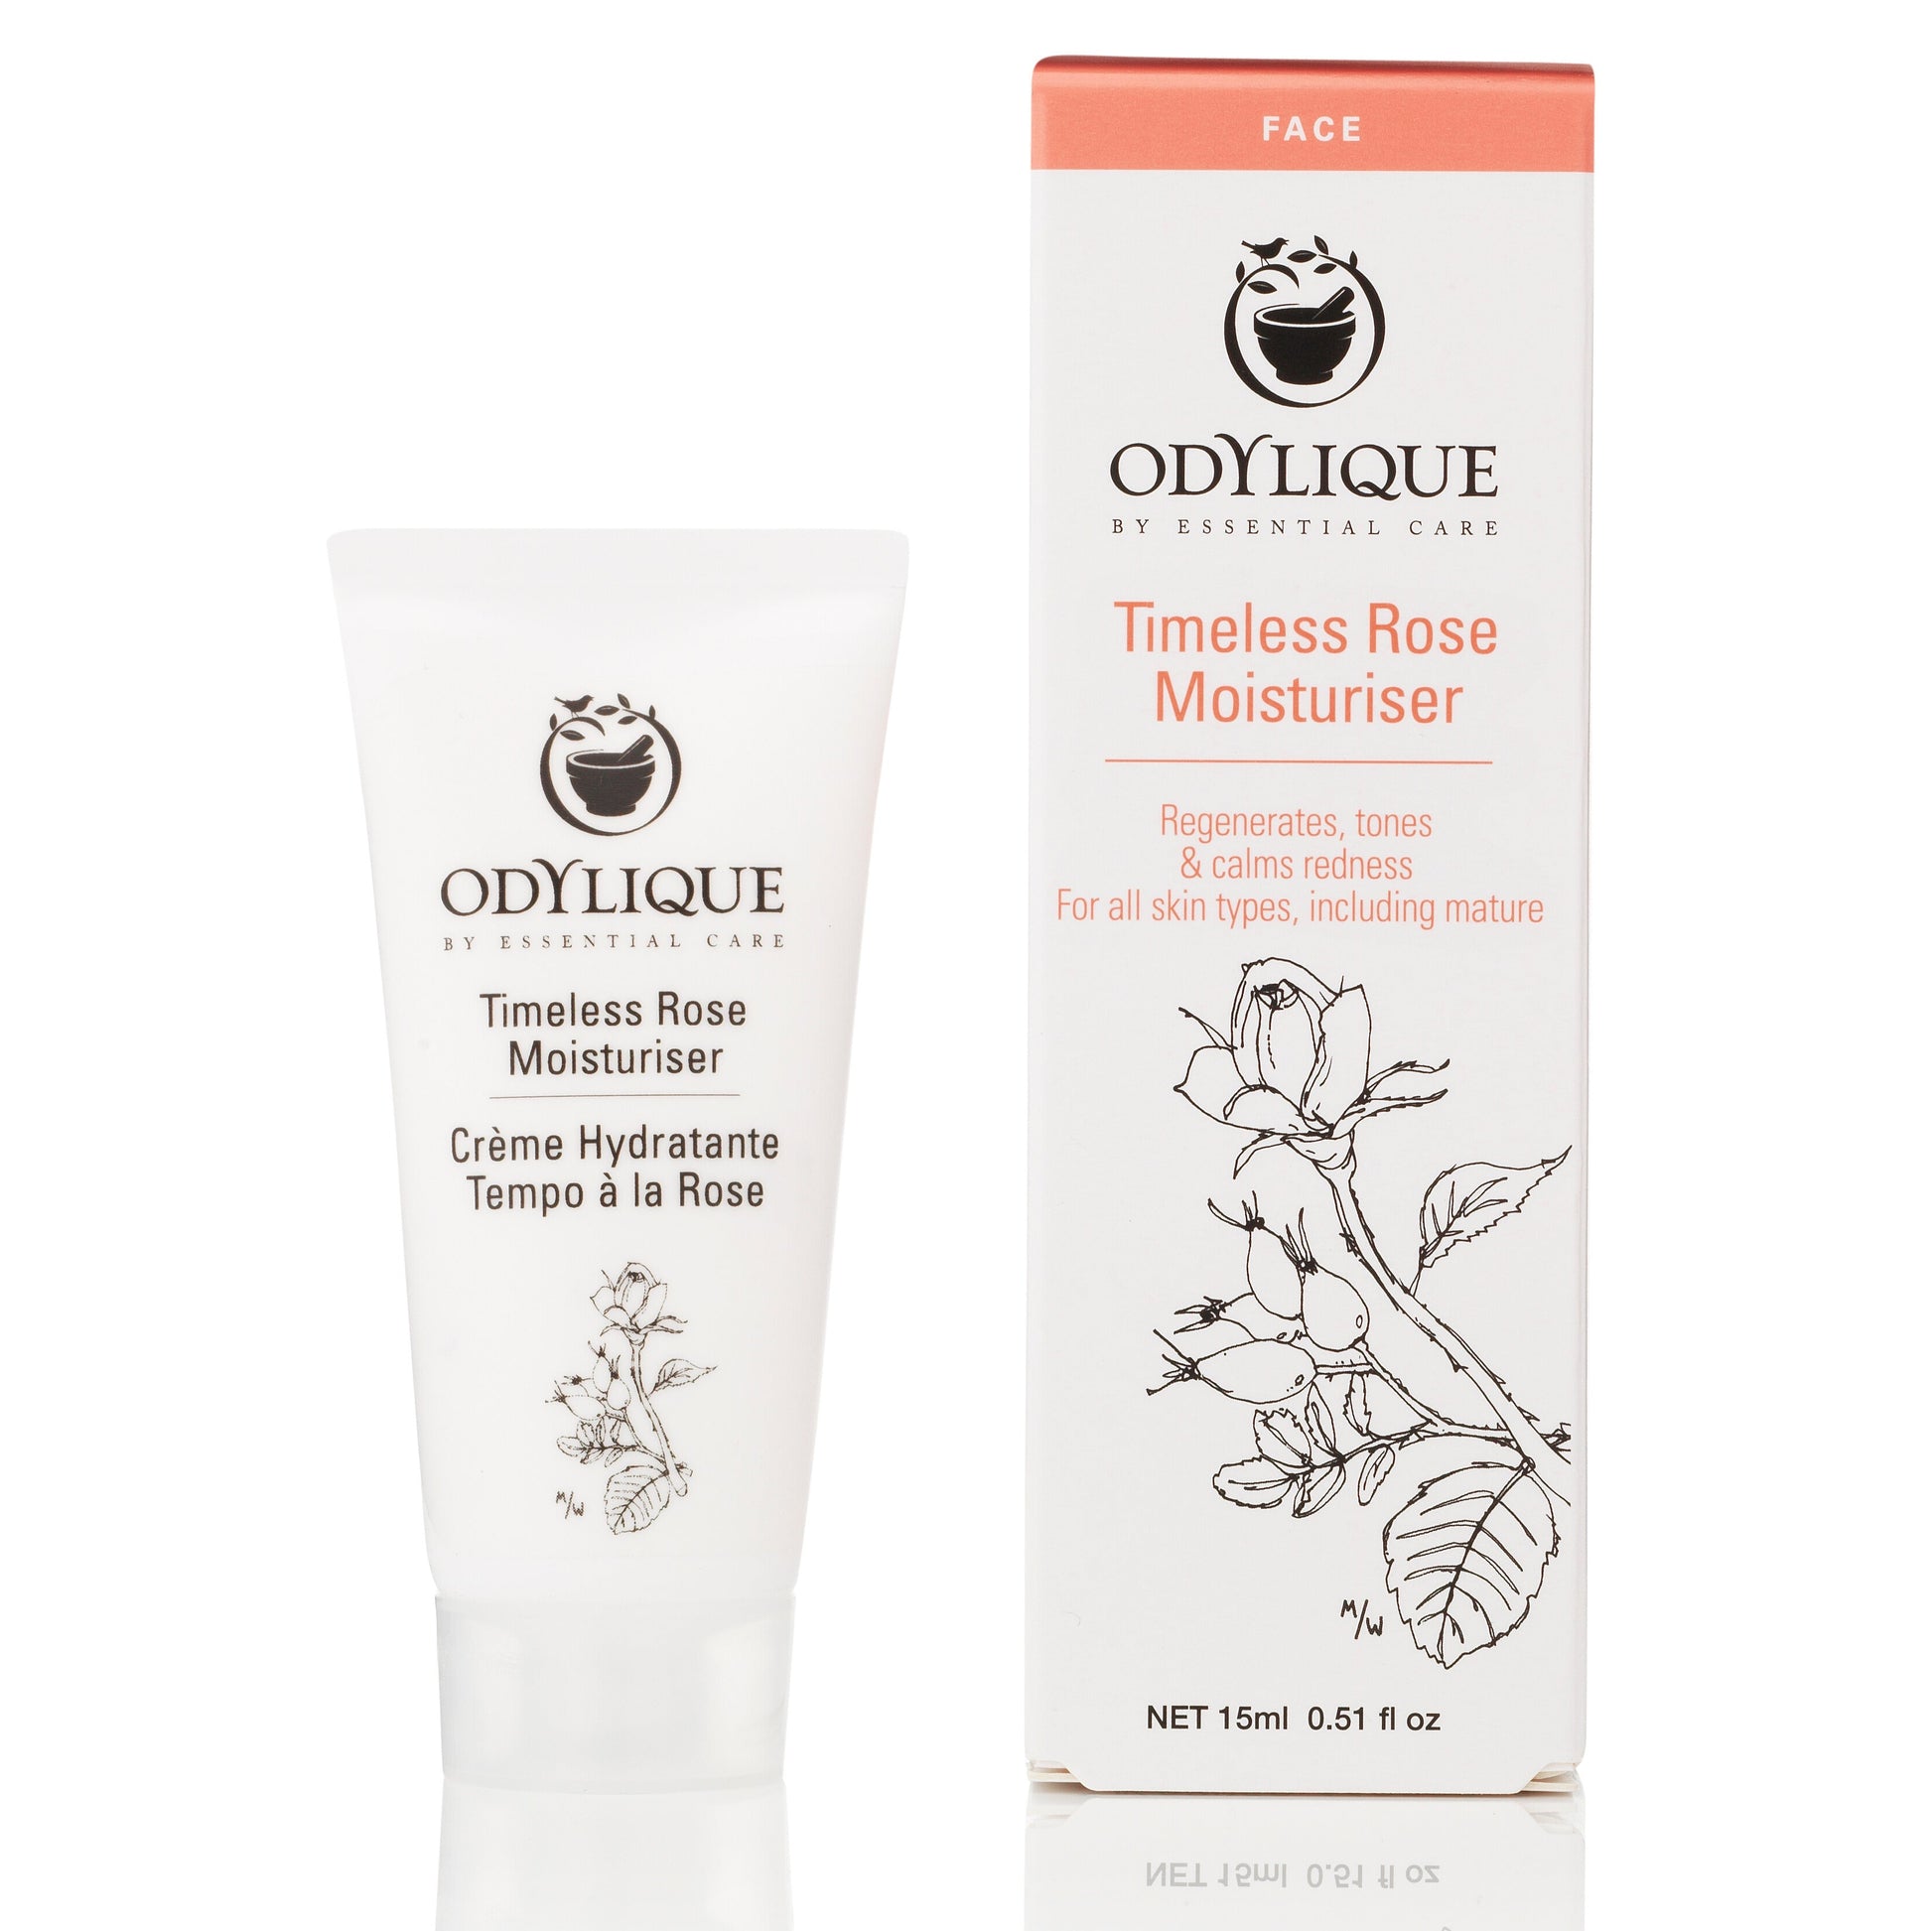 Odylique timeless rose moisturiser 15ml